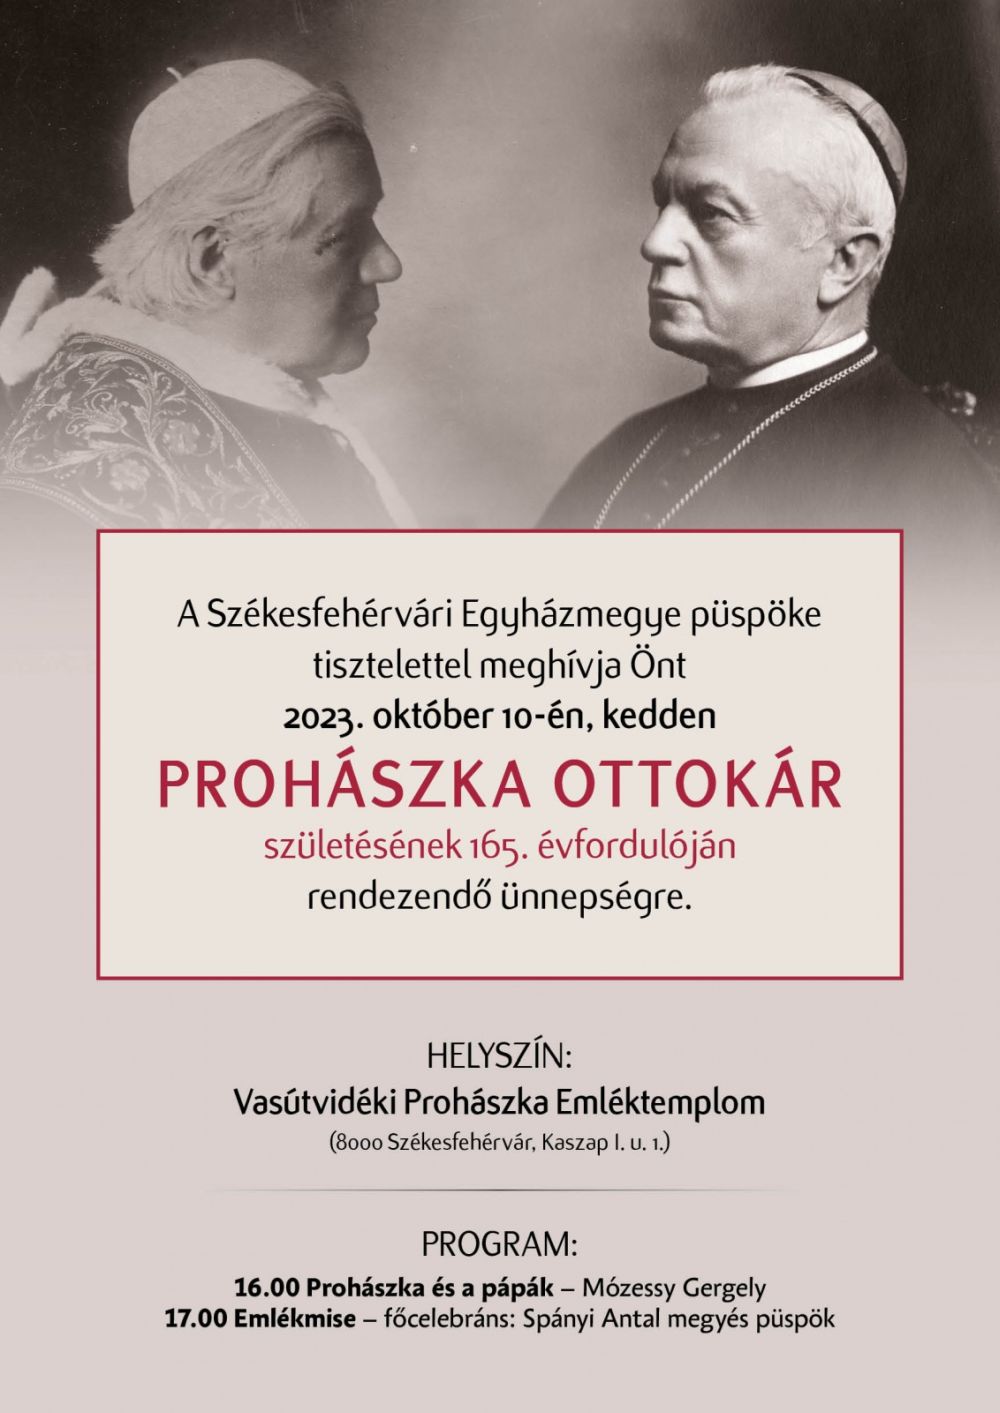 A 165 éve született Prohászka Ottokár püspökre emlékeznek kedden